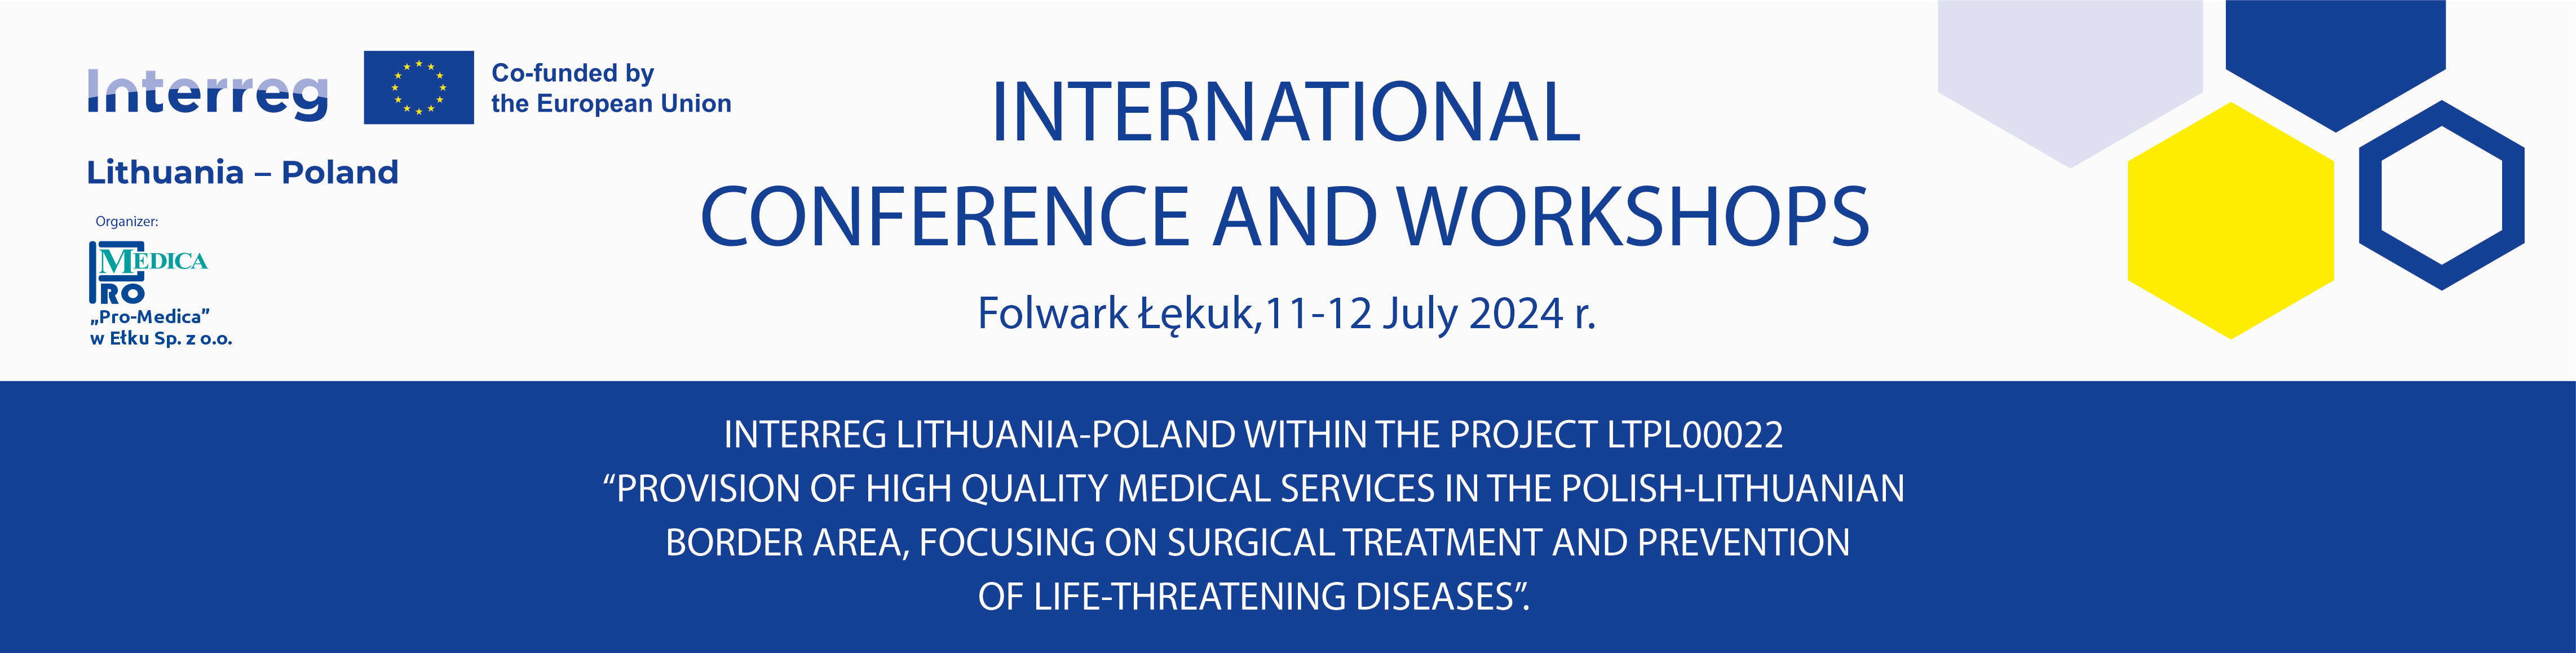 Konferencja Międzynarodowa i Warsztaty Interreg Litwa-Polska - english